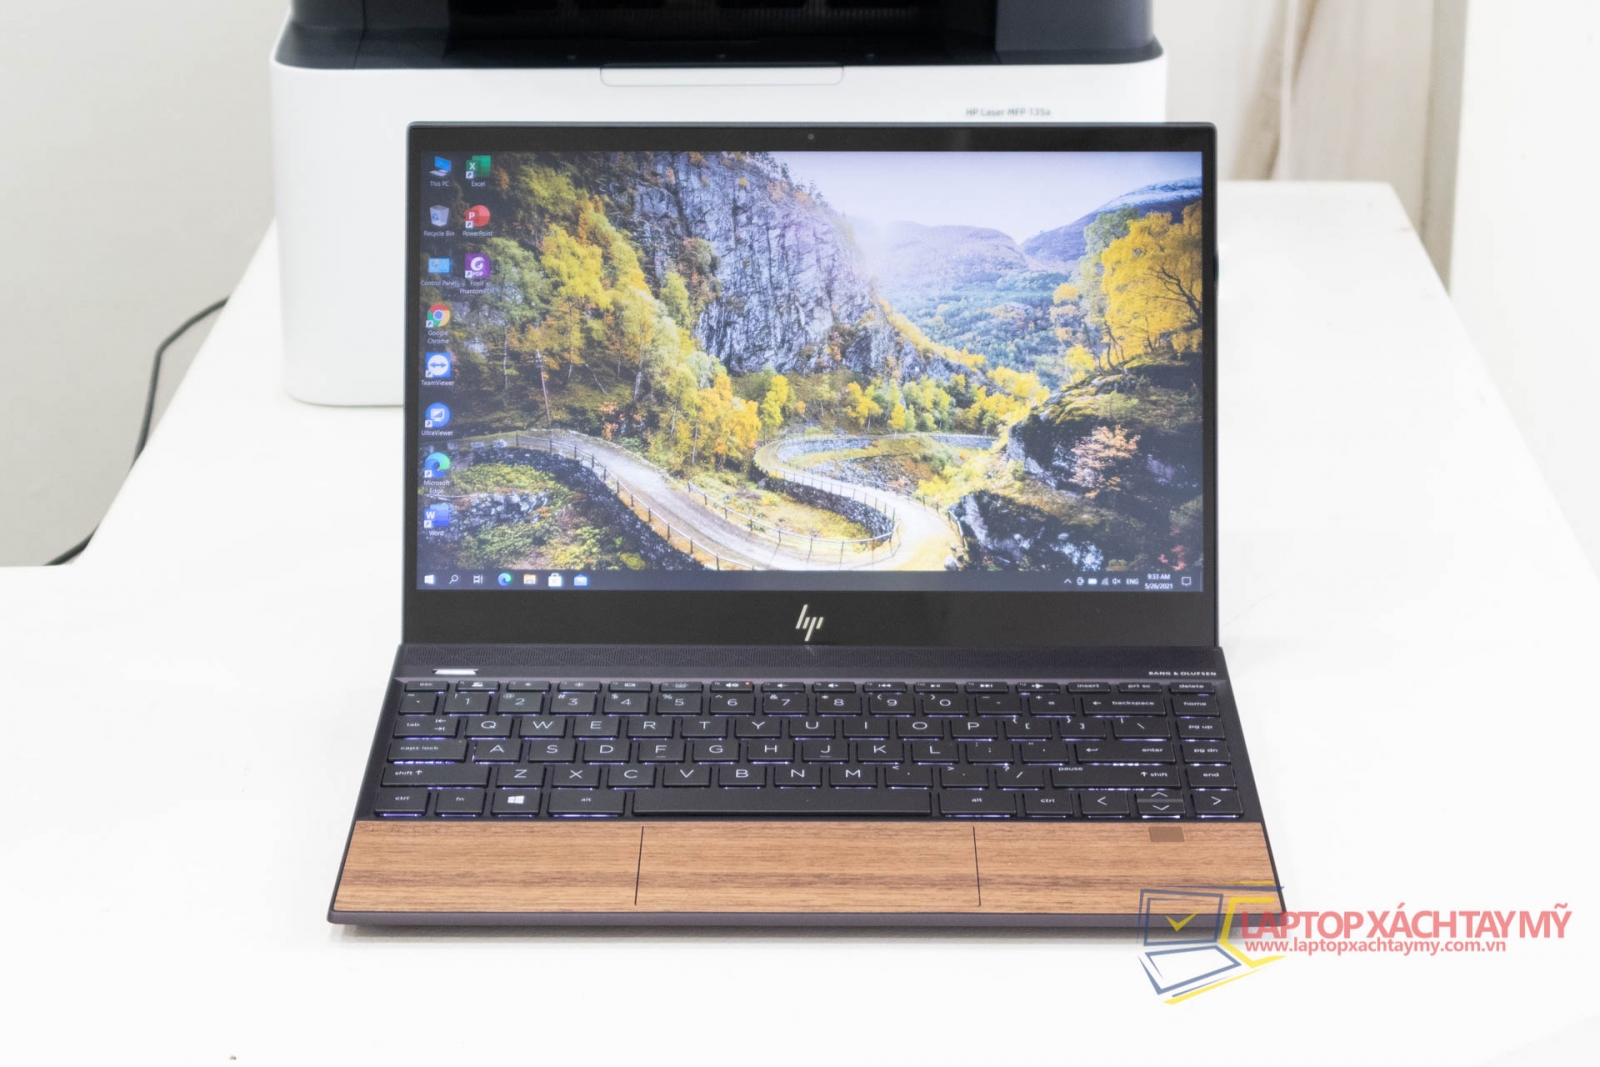 Laptop cũ tp HCM HP Envy 13 - I7 1065G7, Ram 8G, SSD 512G, 13.3 In Full HD